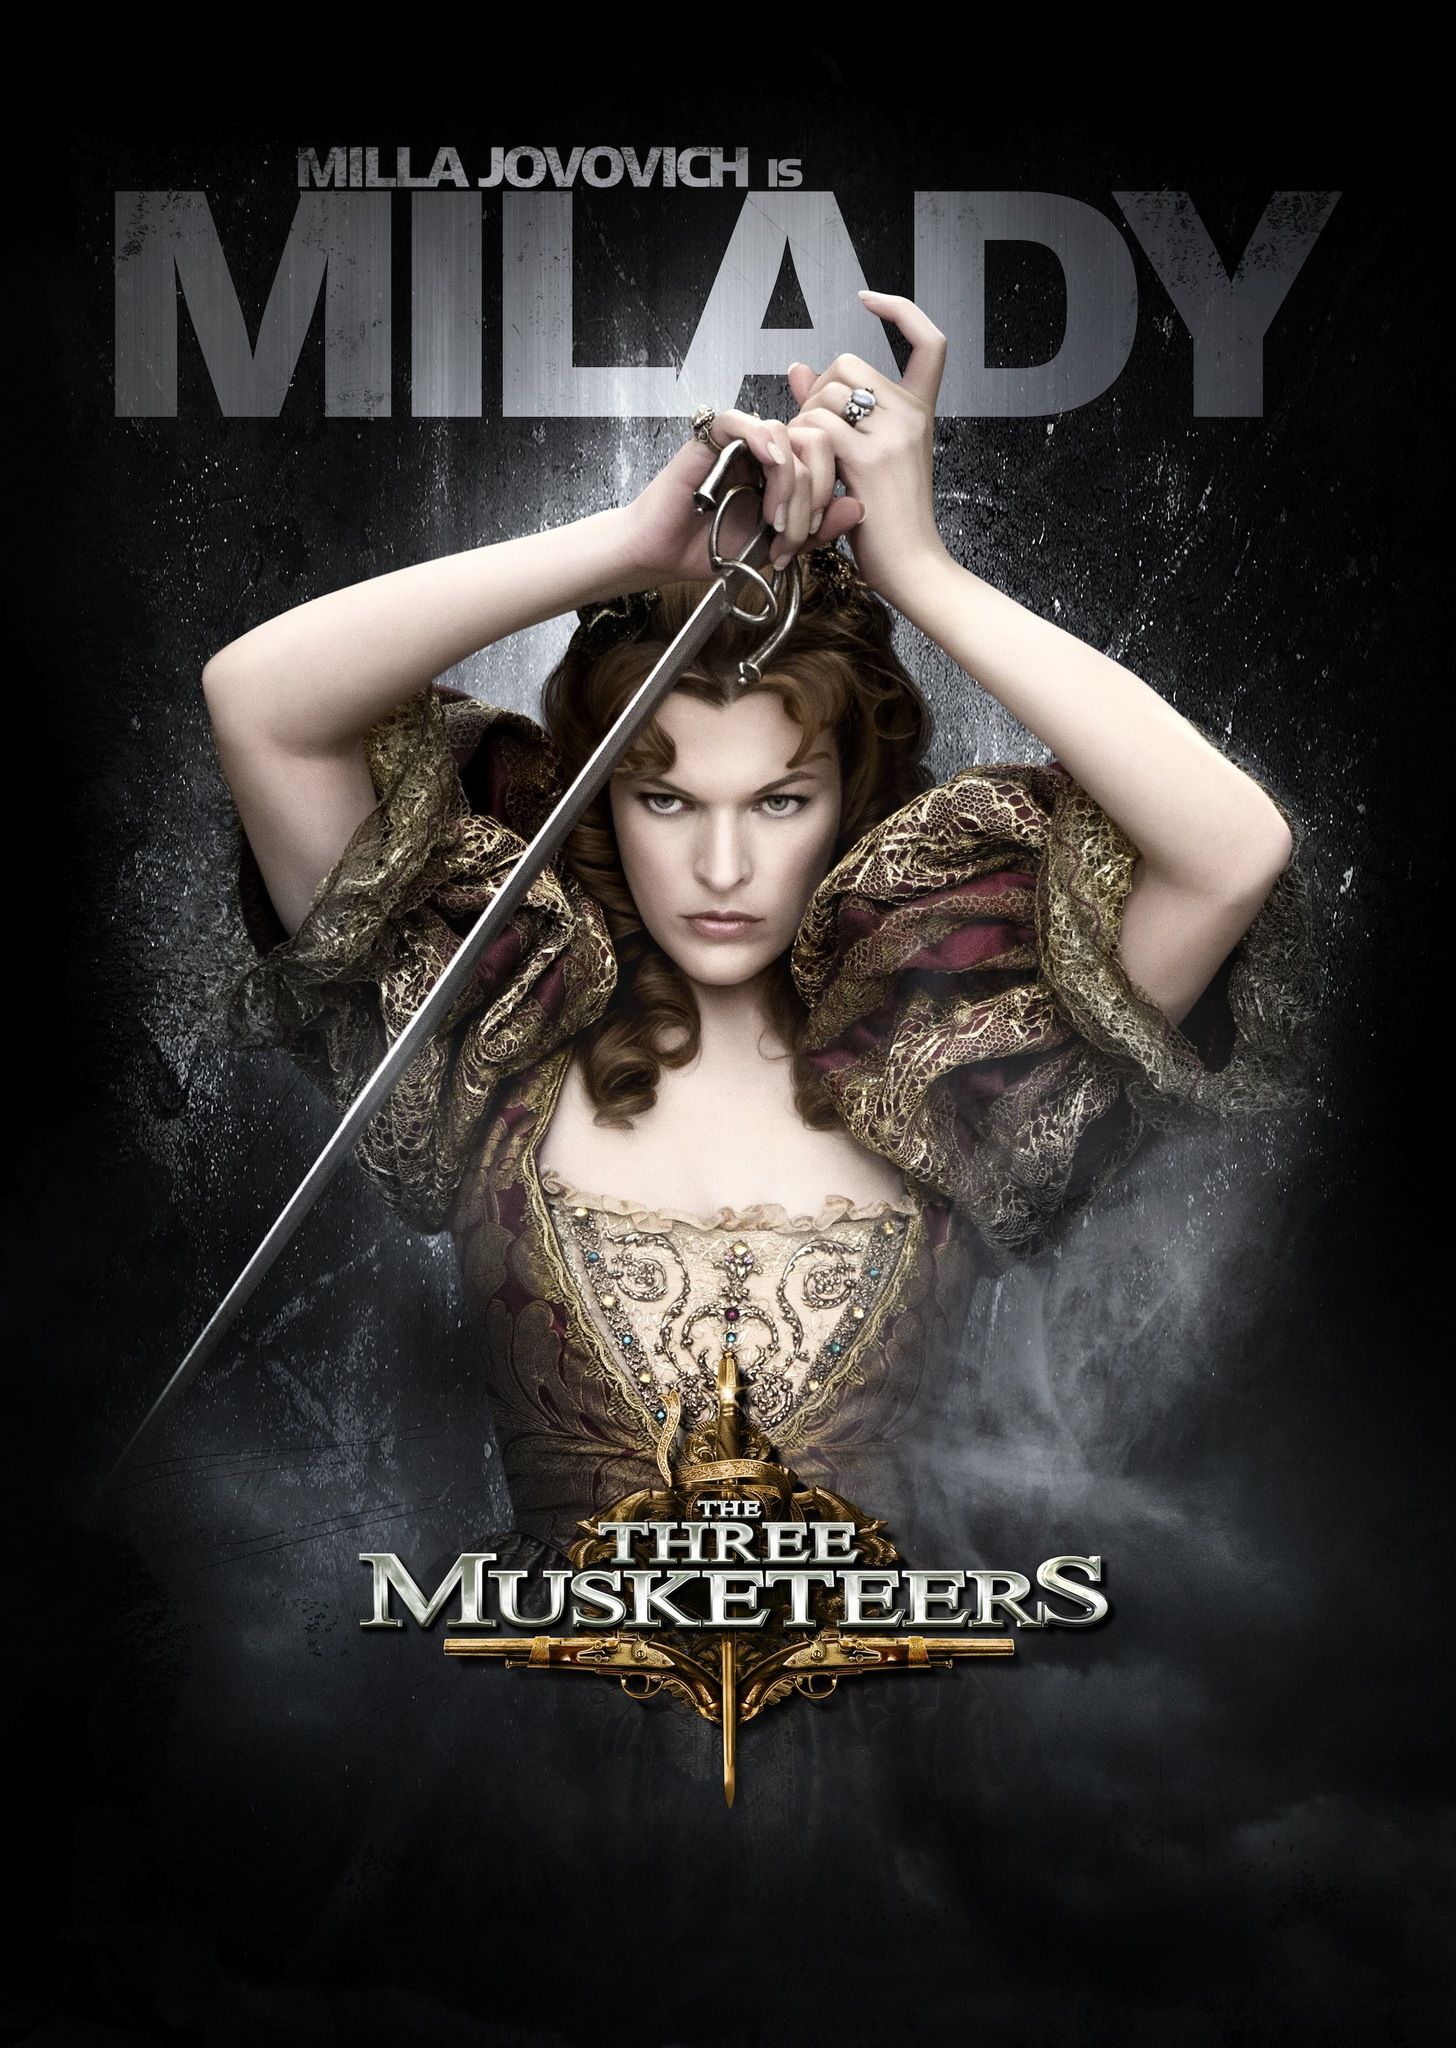 Three Musketeers (2011) Gallery .imdb.com